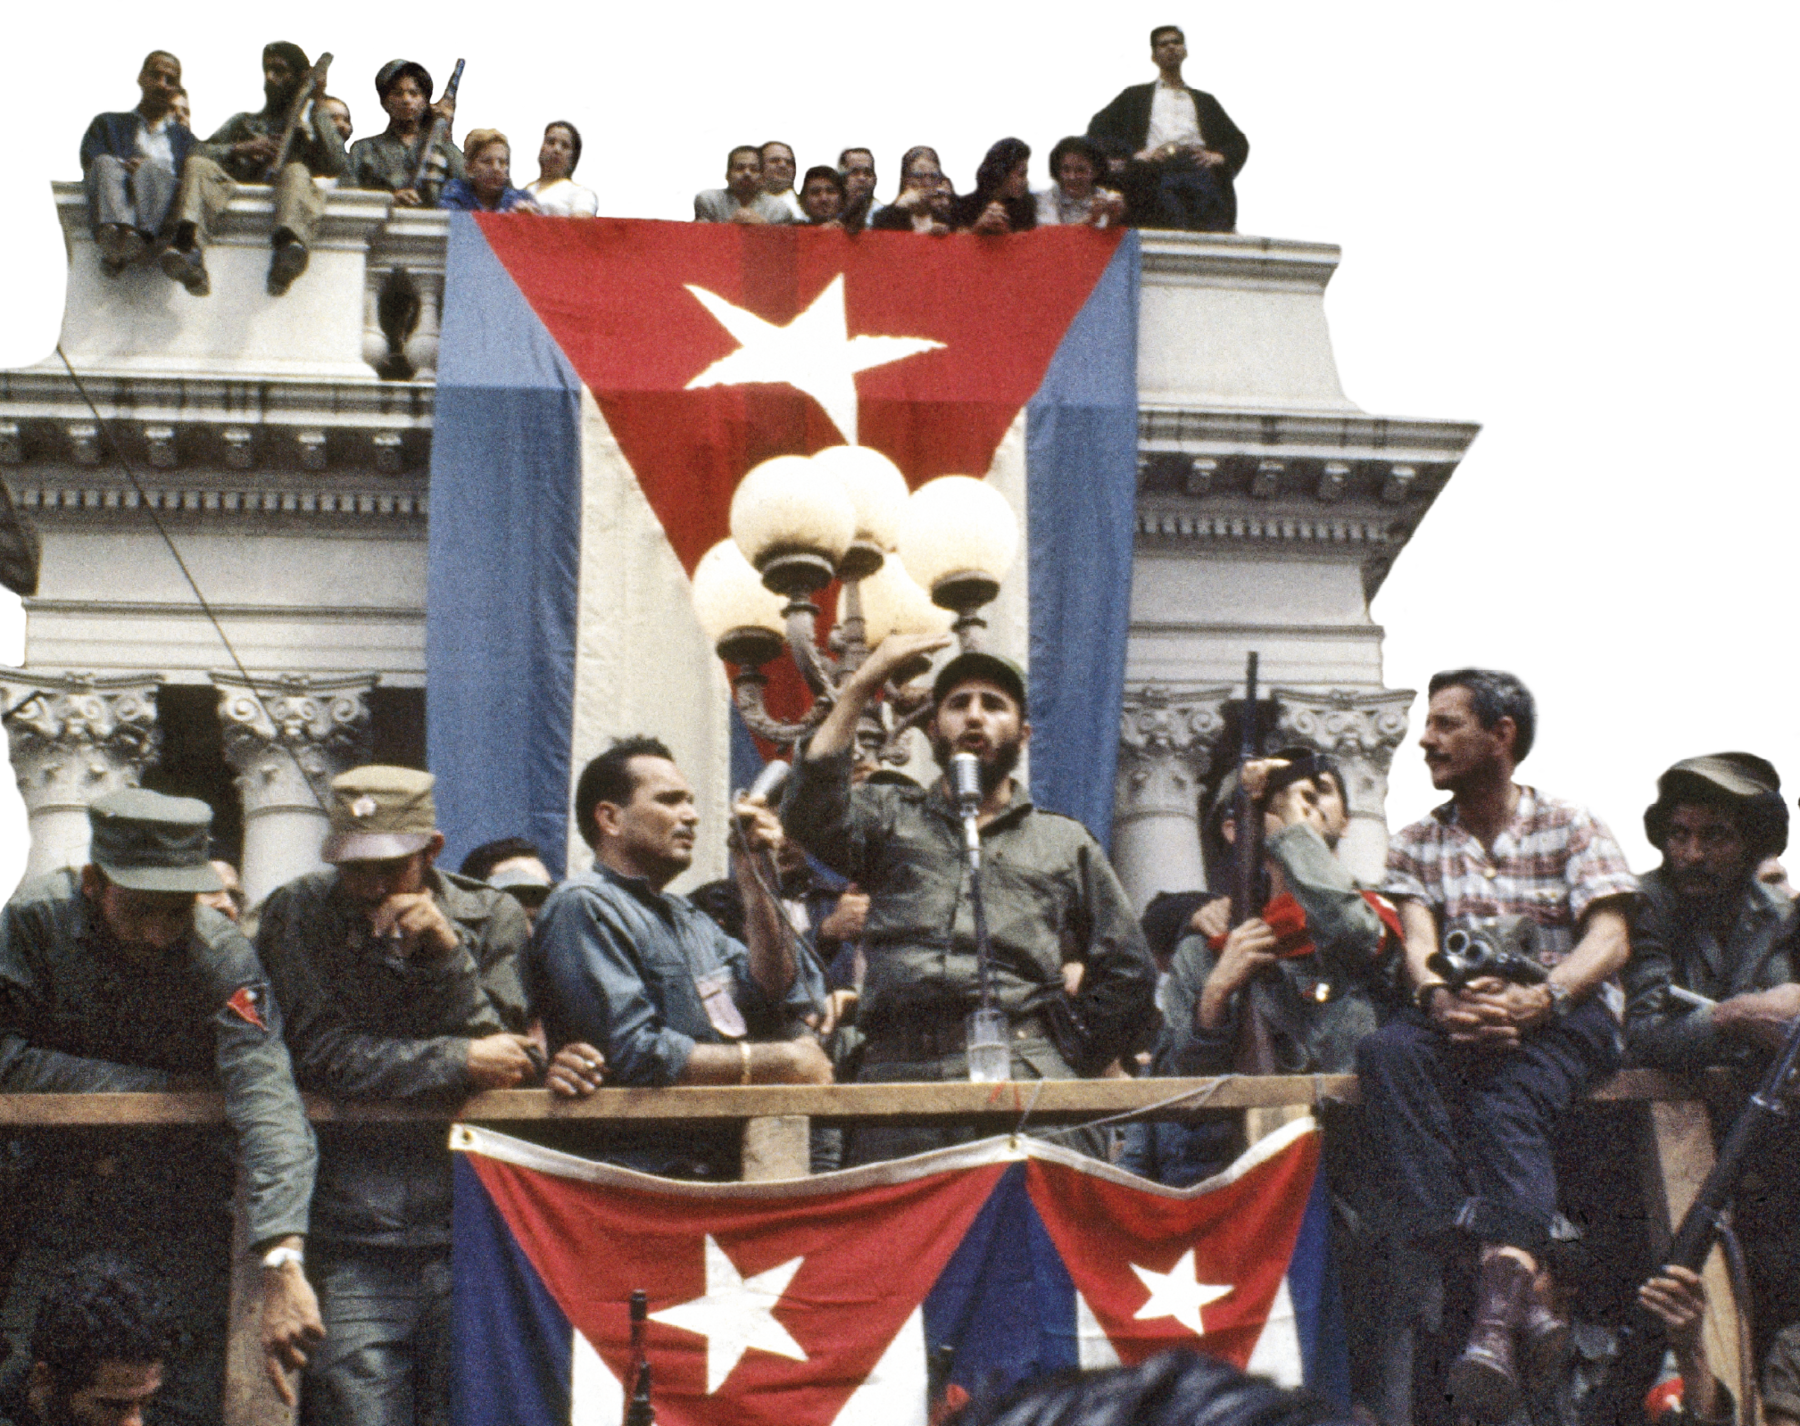 Fotografia. No primeiro plano, Fidel Castro sobre um palanque. Veste macacão verde e boina. Discursa em um microfone com uma das mãos levantadas. Ao seu redor, diversas pessoas assistem. Algumas carregam armas de fogo. Ao fundo uma grande bandeira de Cuba pendurada em um terraço em que se vê algumas pessoas. À frente de Fidel, duas bandeiras de Cuba igualmente penduradas.